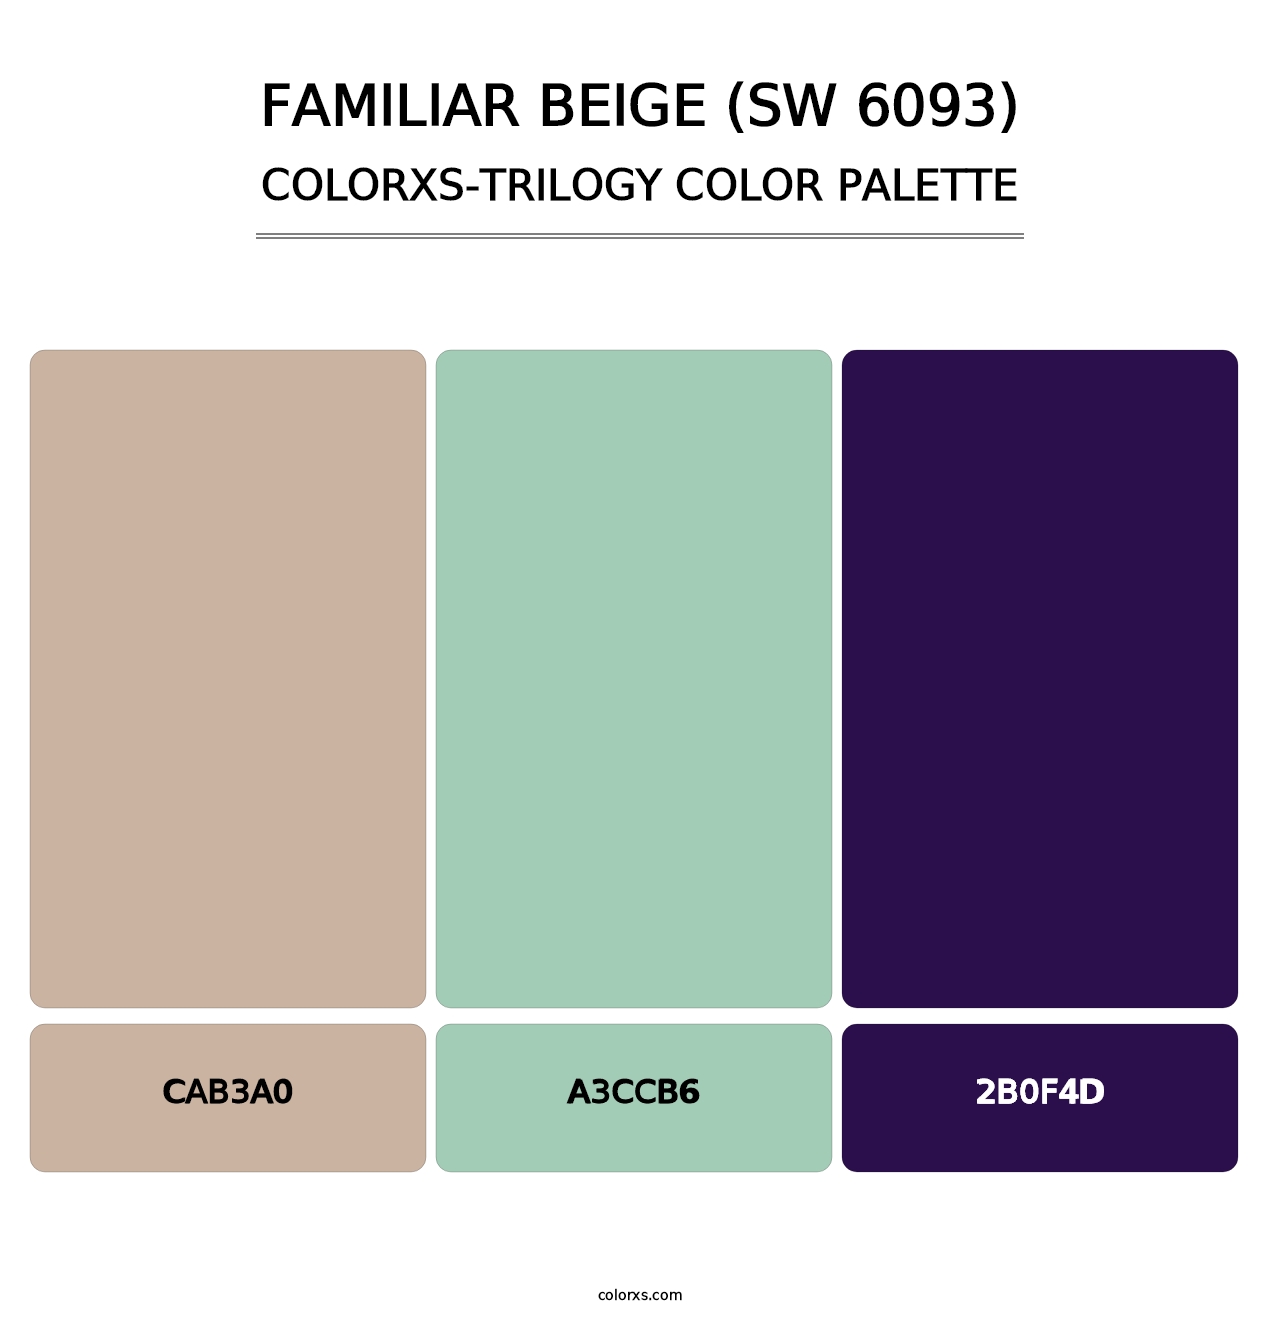 Familiar Beige (SW 6093) - Colorxs Trilogy Palette